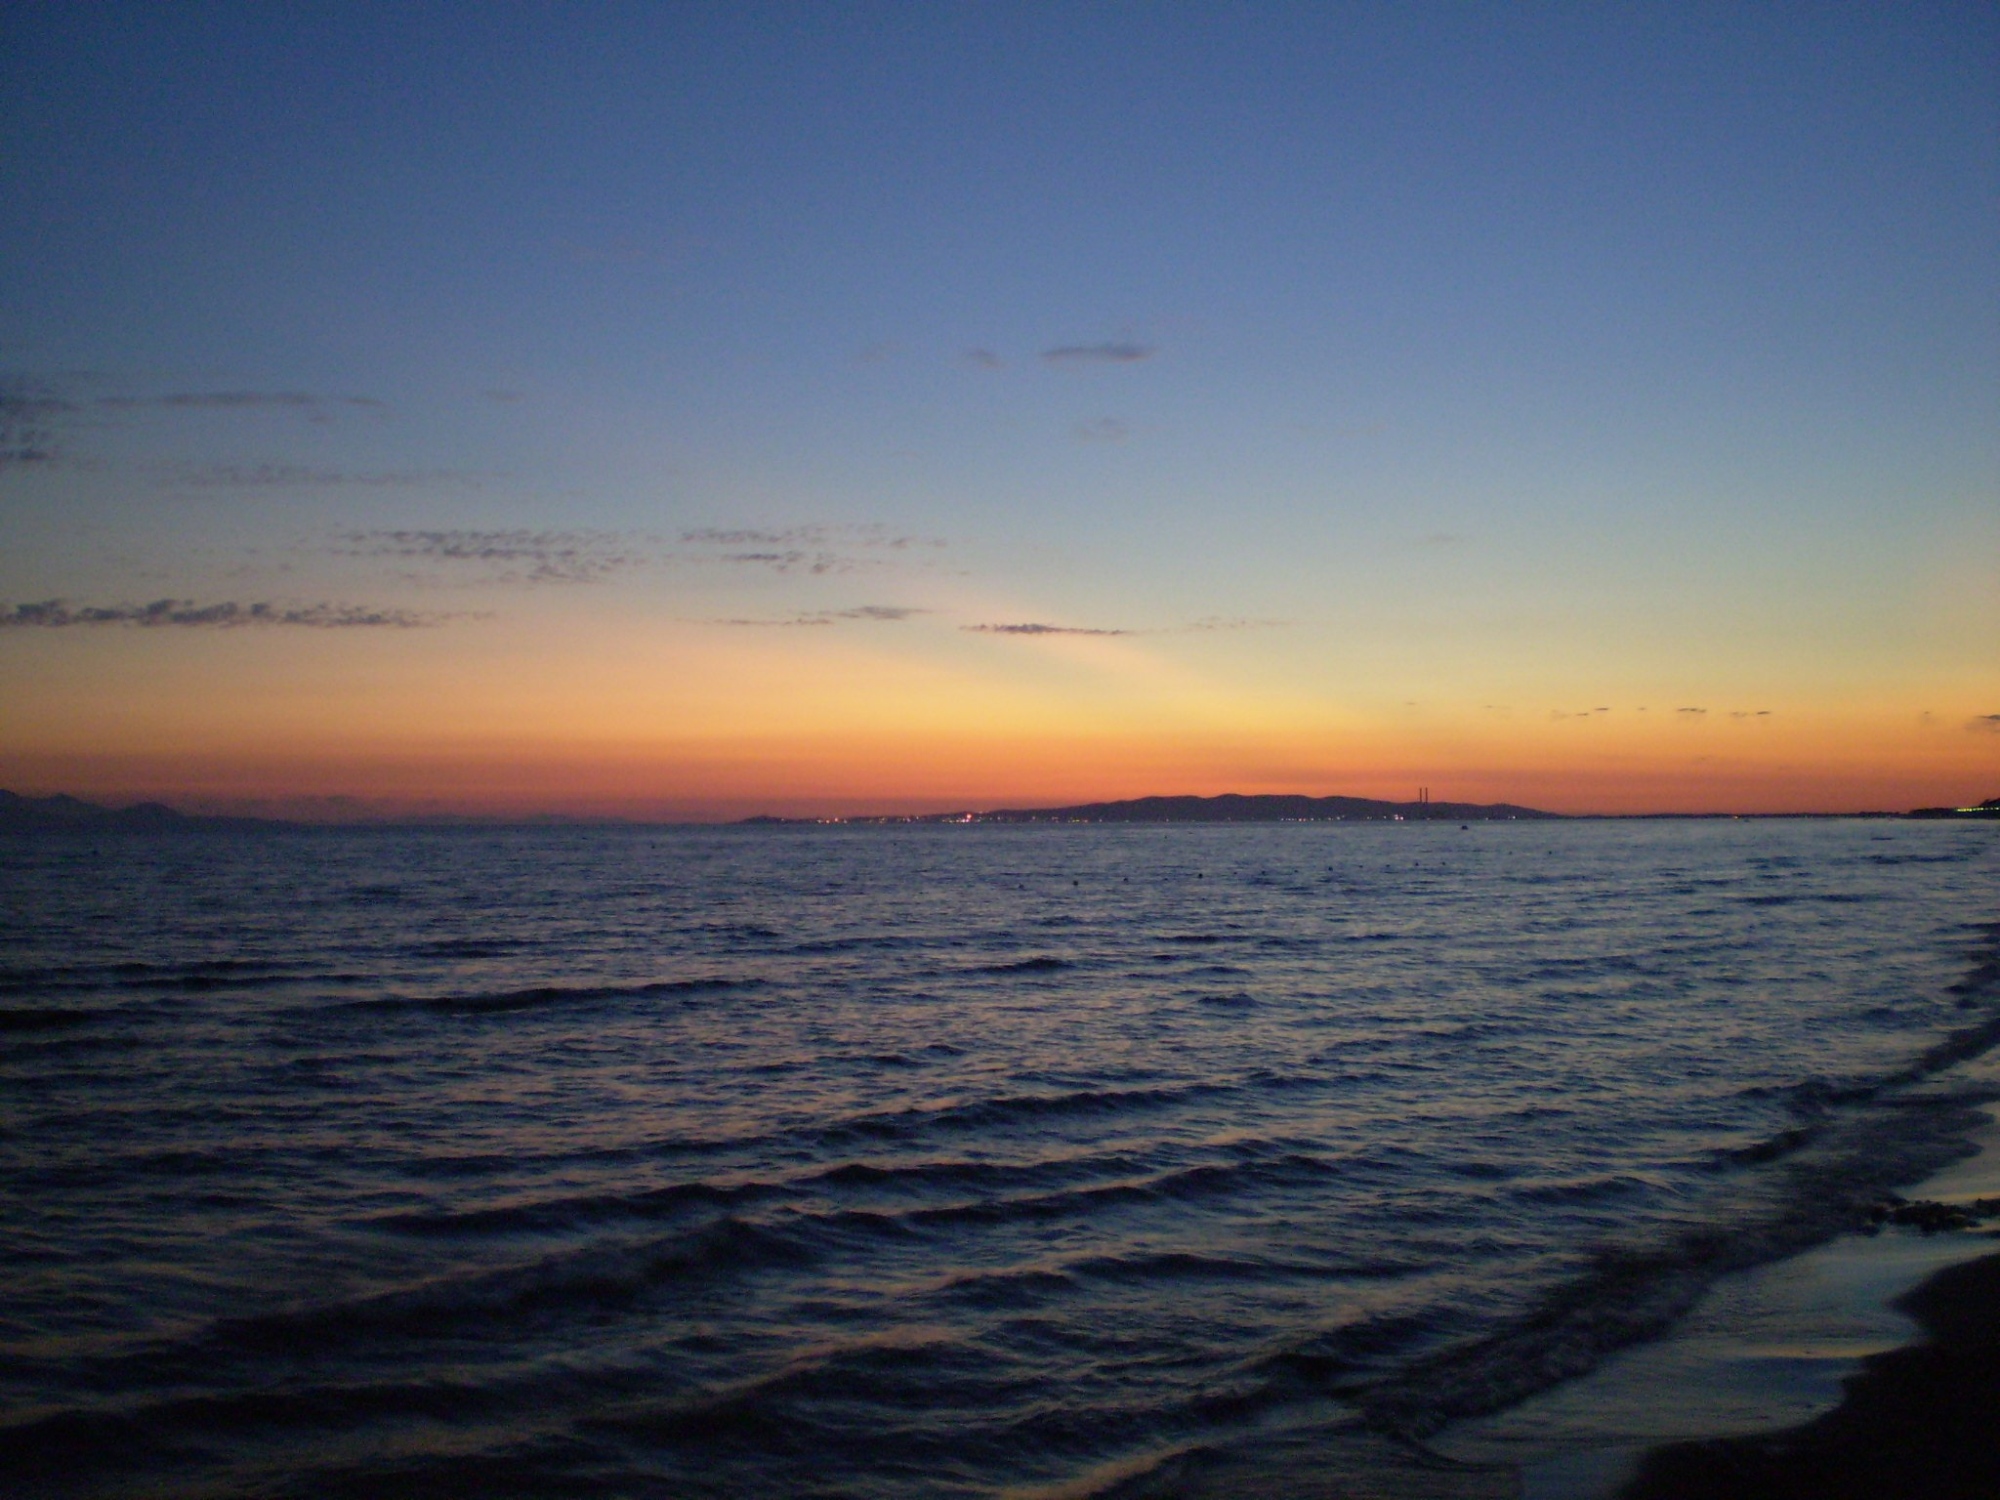 Spiaggia di Pratoranieri al tramonto